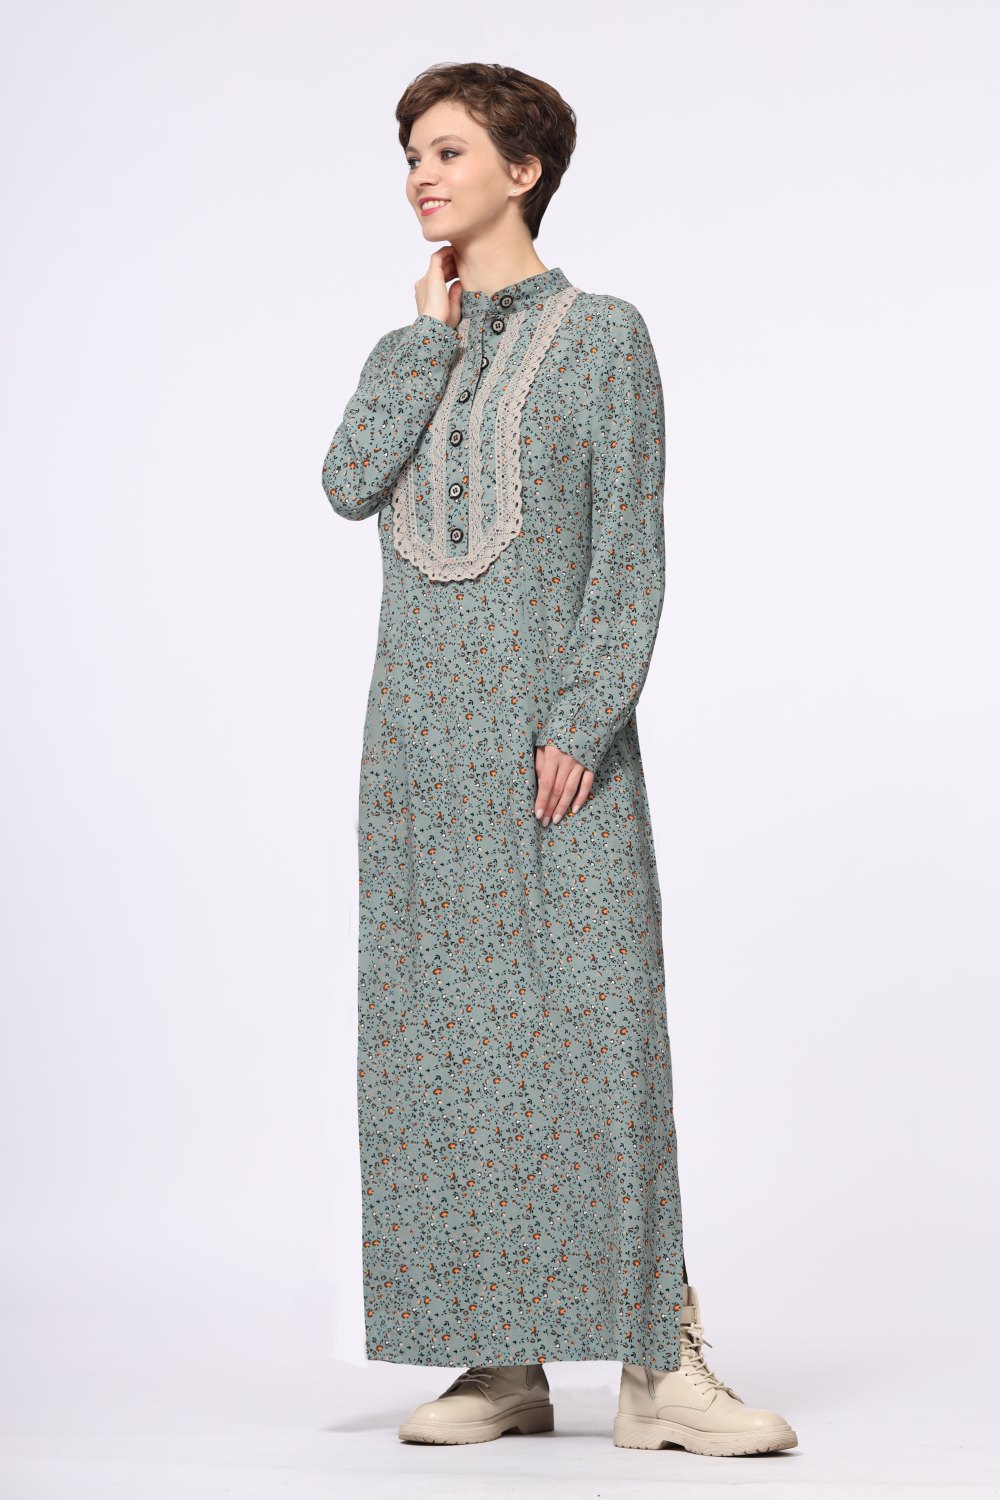 Платье женское "Марья" макси модель 475/3 цвет: серо-голубые цветочки